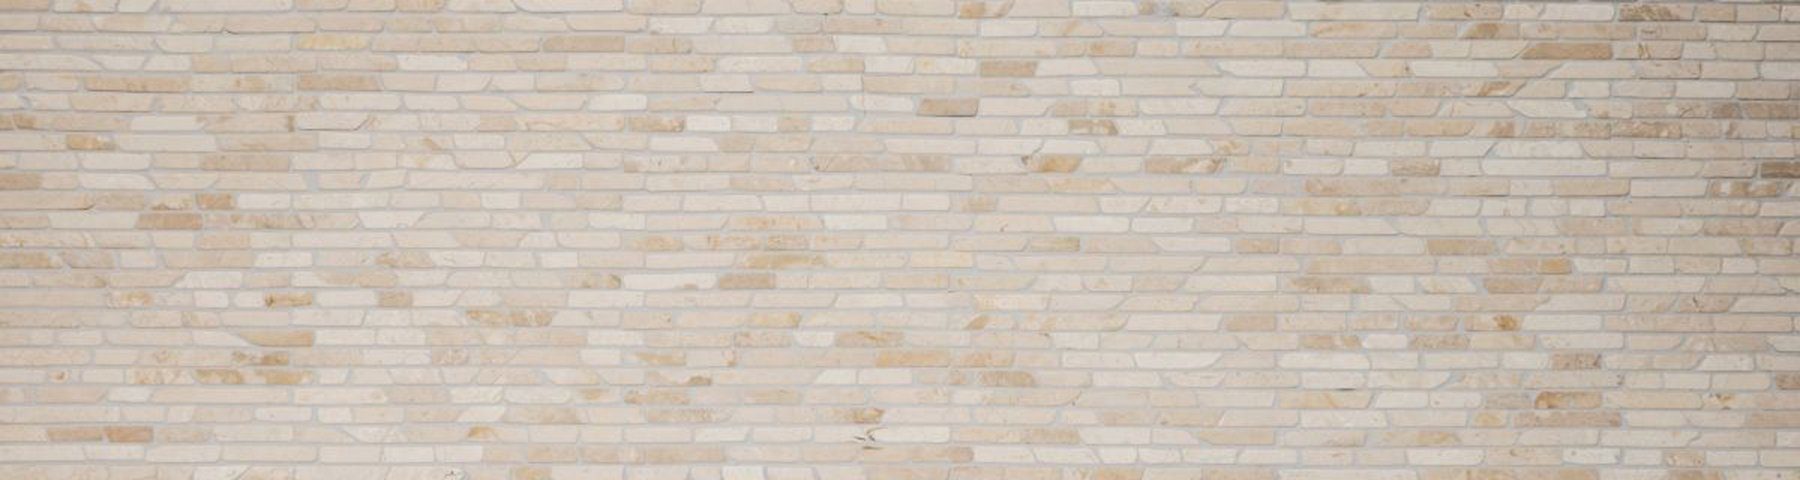 Mosani Bodenfliese Verbund Fliesenspiegel Naturstein hellbeige Marmor Mosaik Brick